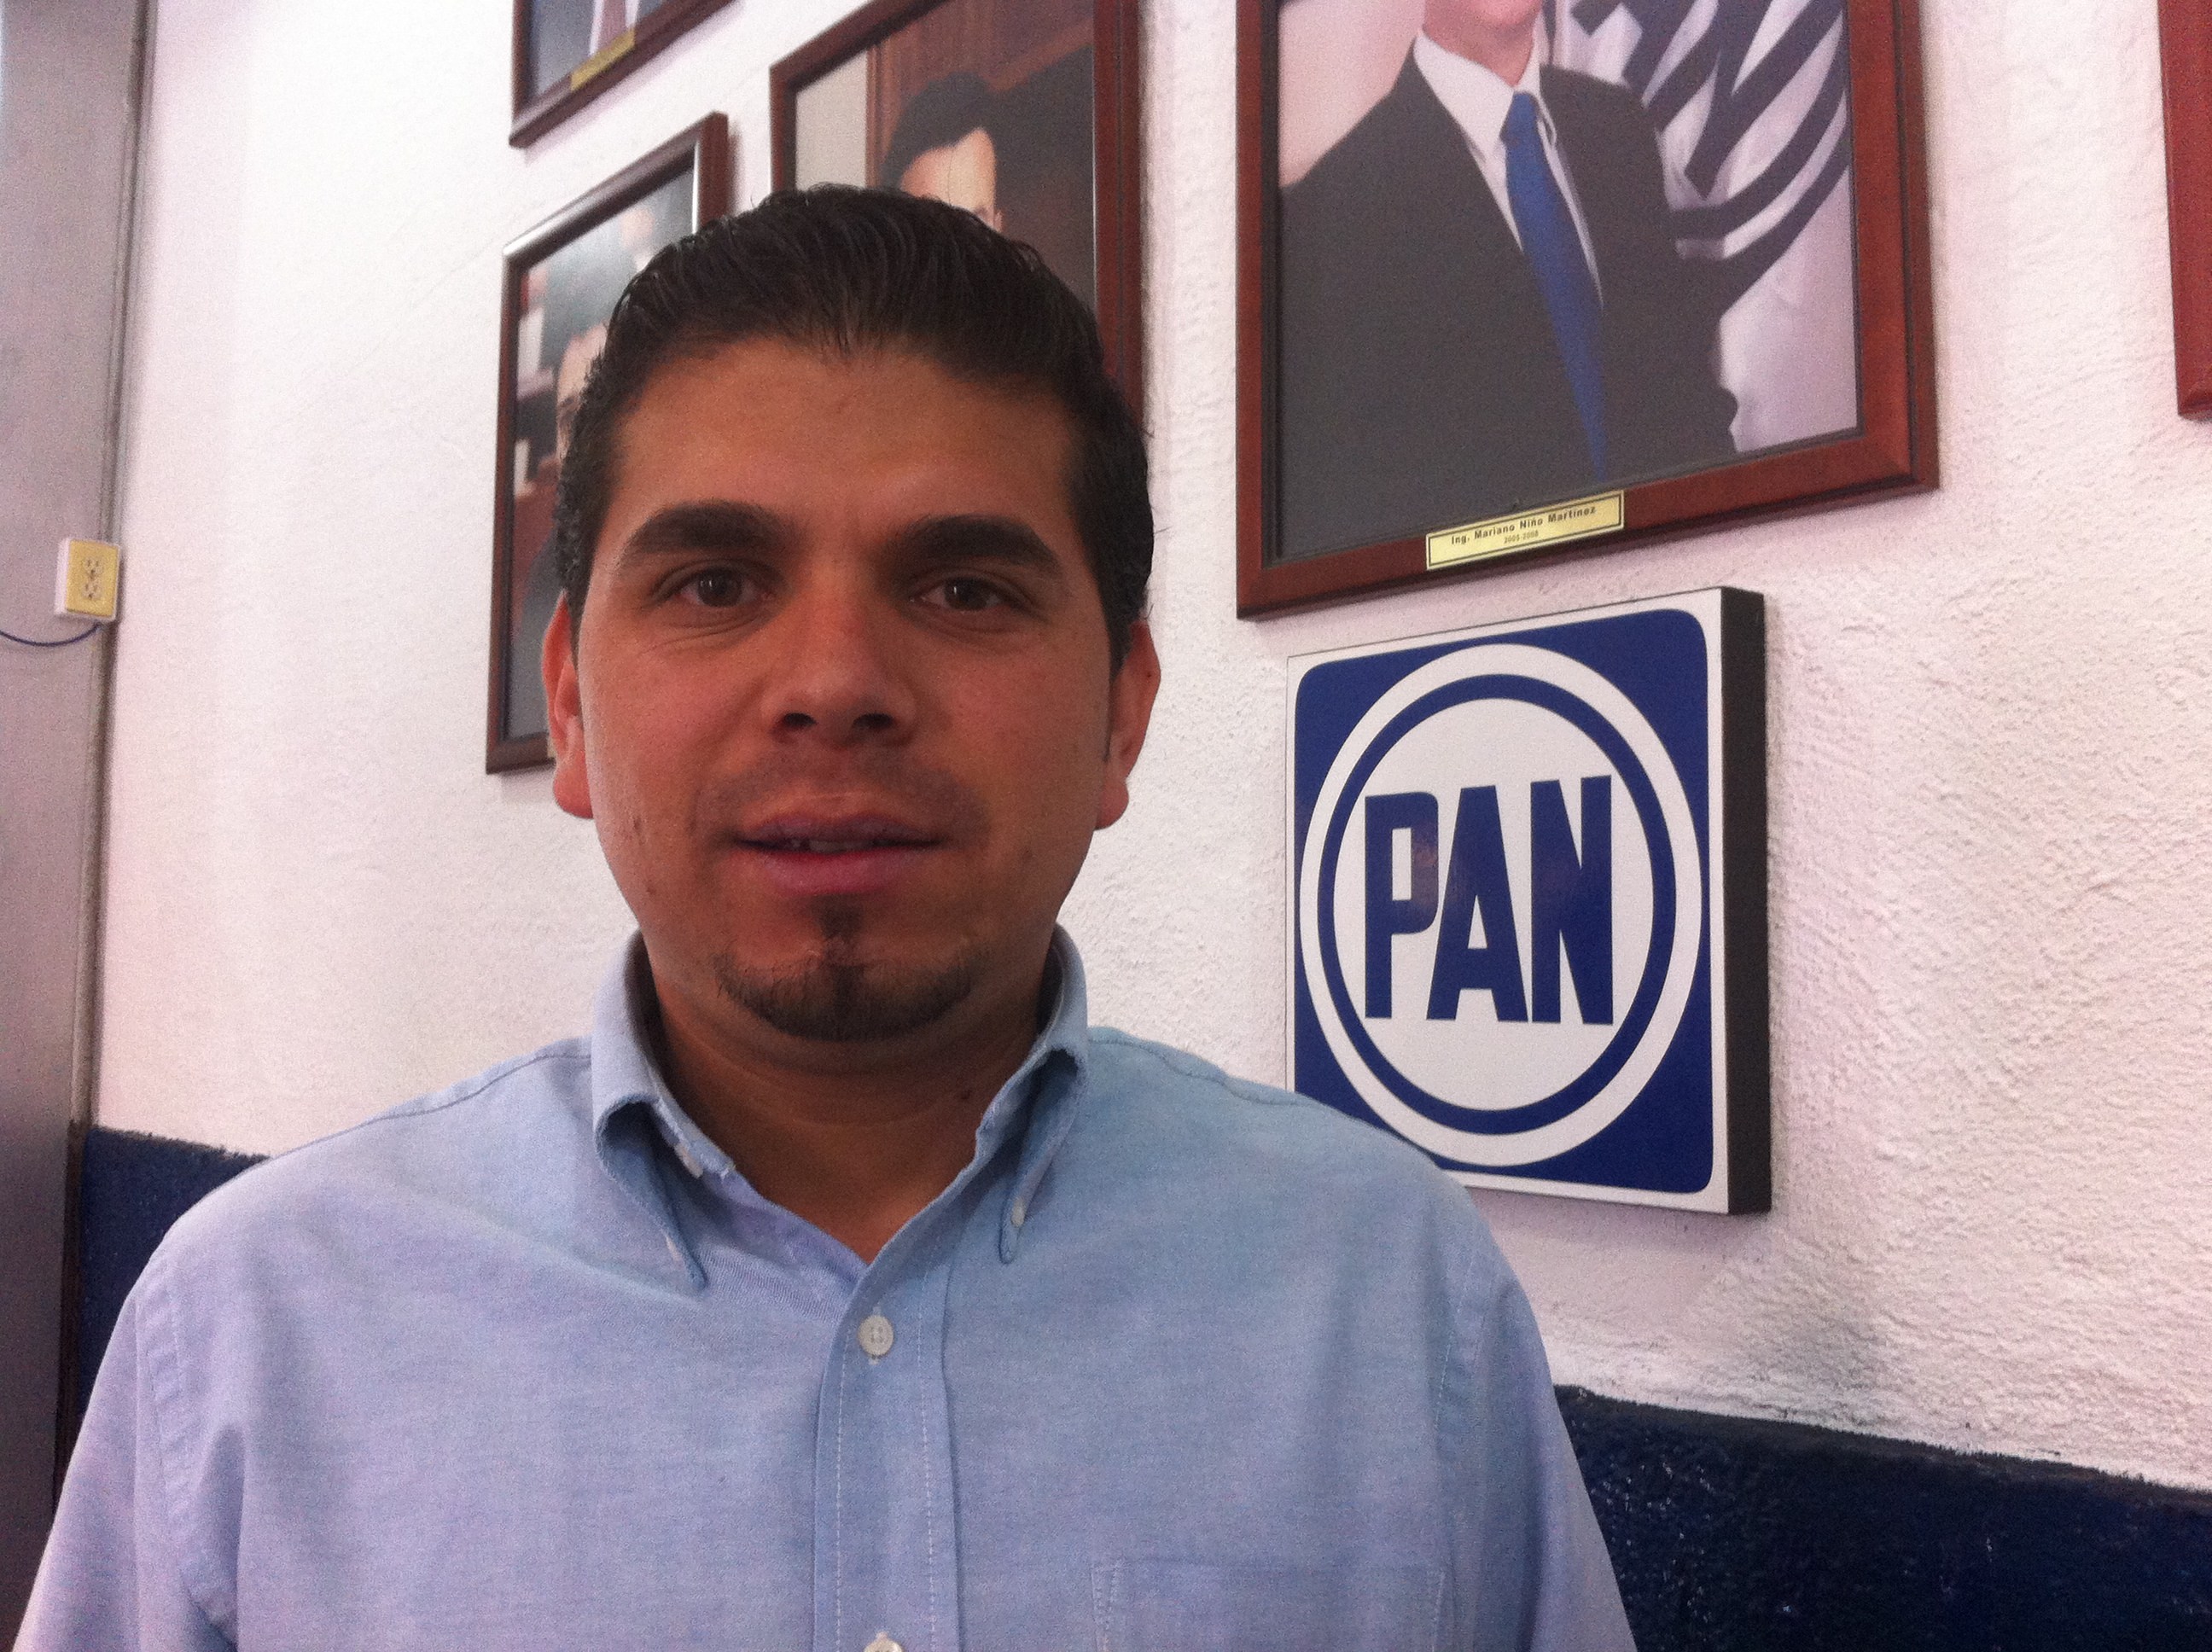  PAN acusa a Gallardo de arbitrario por despido injustificado de trabajadores